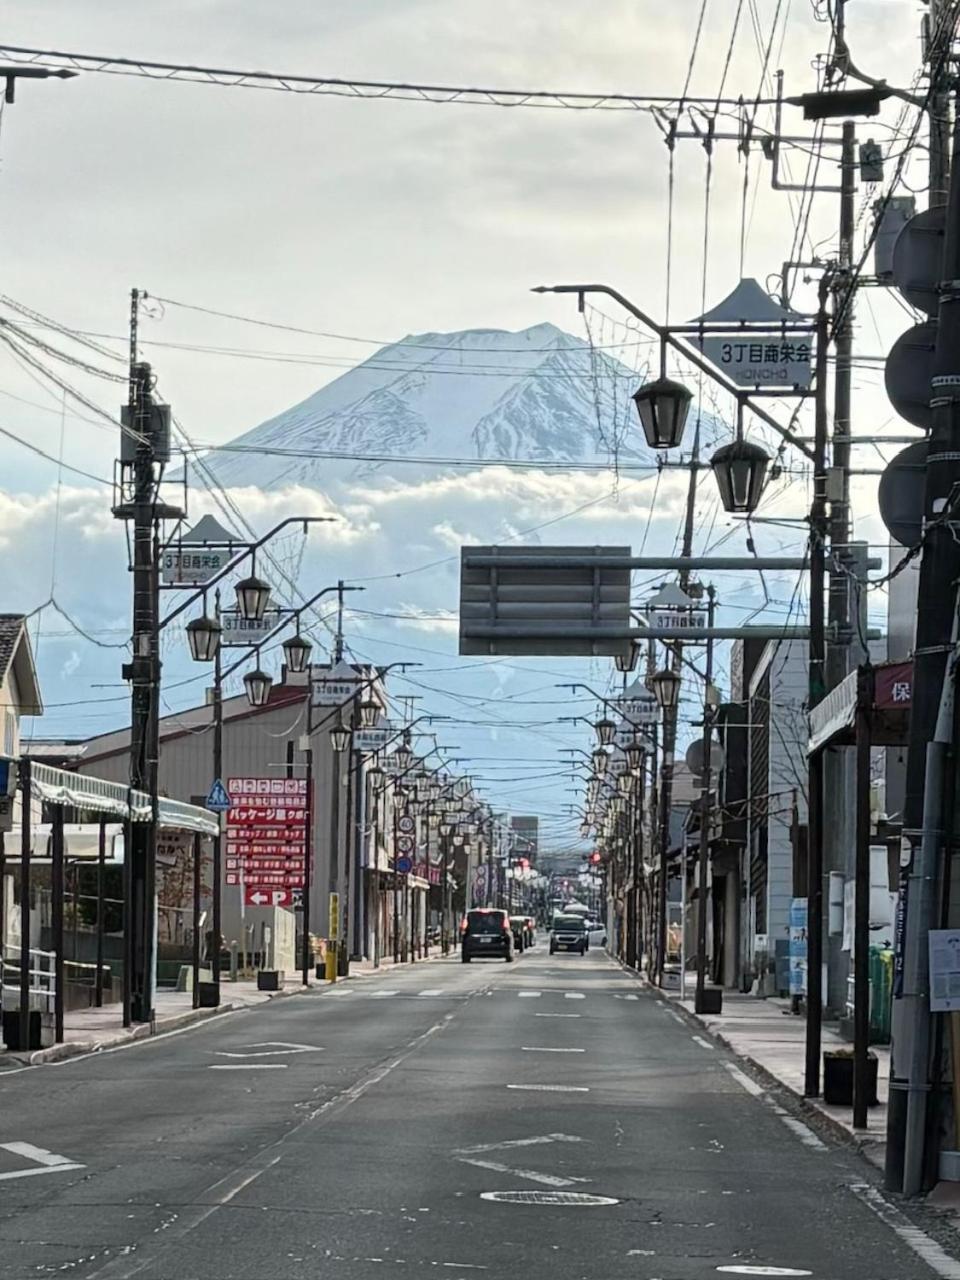 Hostel Mt. Fuji - Fukuya Fujiyoshida Exterior photo